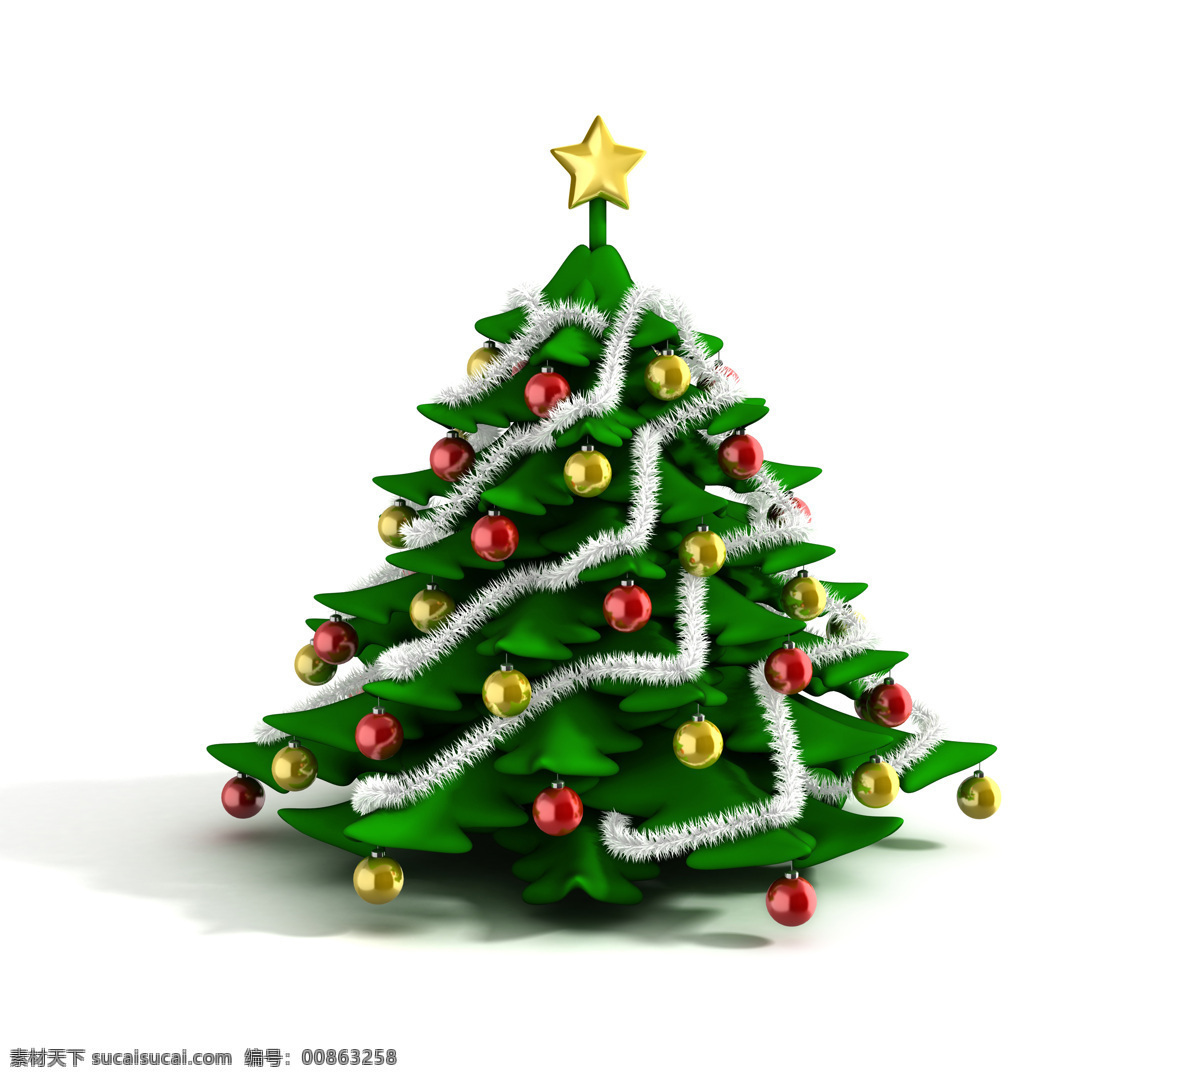 美丽 圣诞树 一棵 圣诞球 装饰物 圣诞节 节日庆典 生活百科